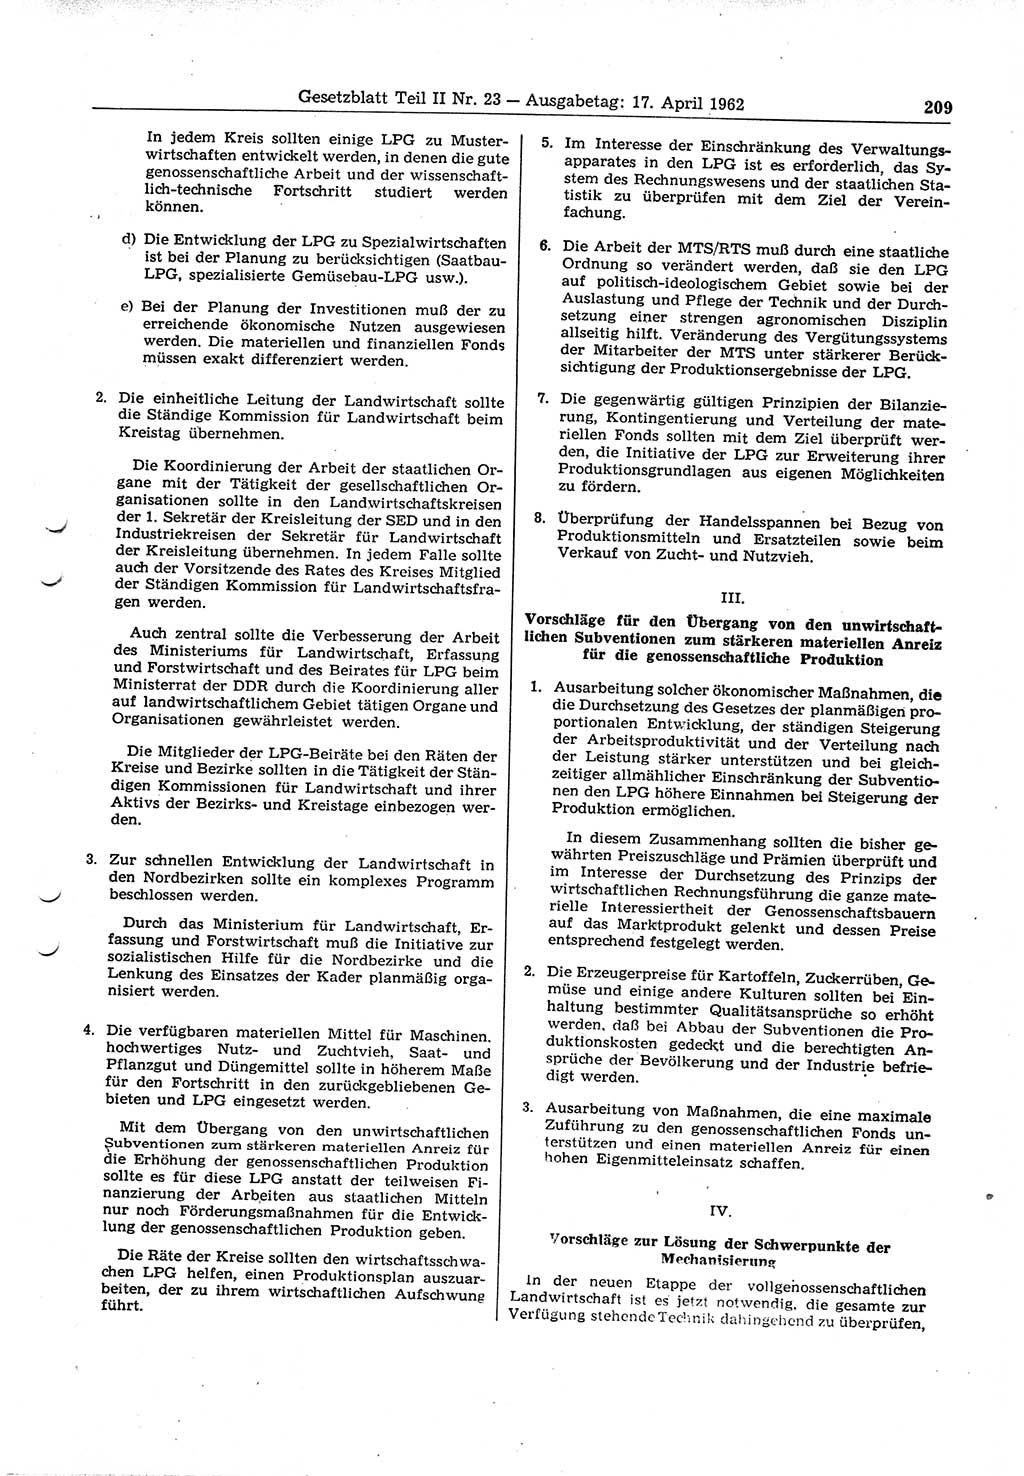 Gesetzblatt (GBl.) der Deutschen Demokratischen Republik (DDR) Teil ⅠⅠ 1962, Seite 209 (GBl. DDR ⅠⅠ 1962, S. 209)